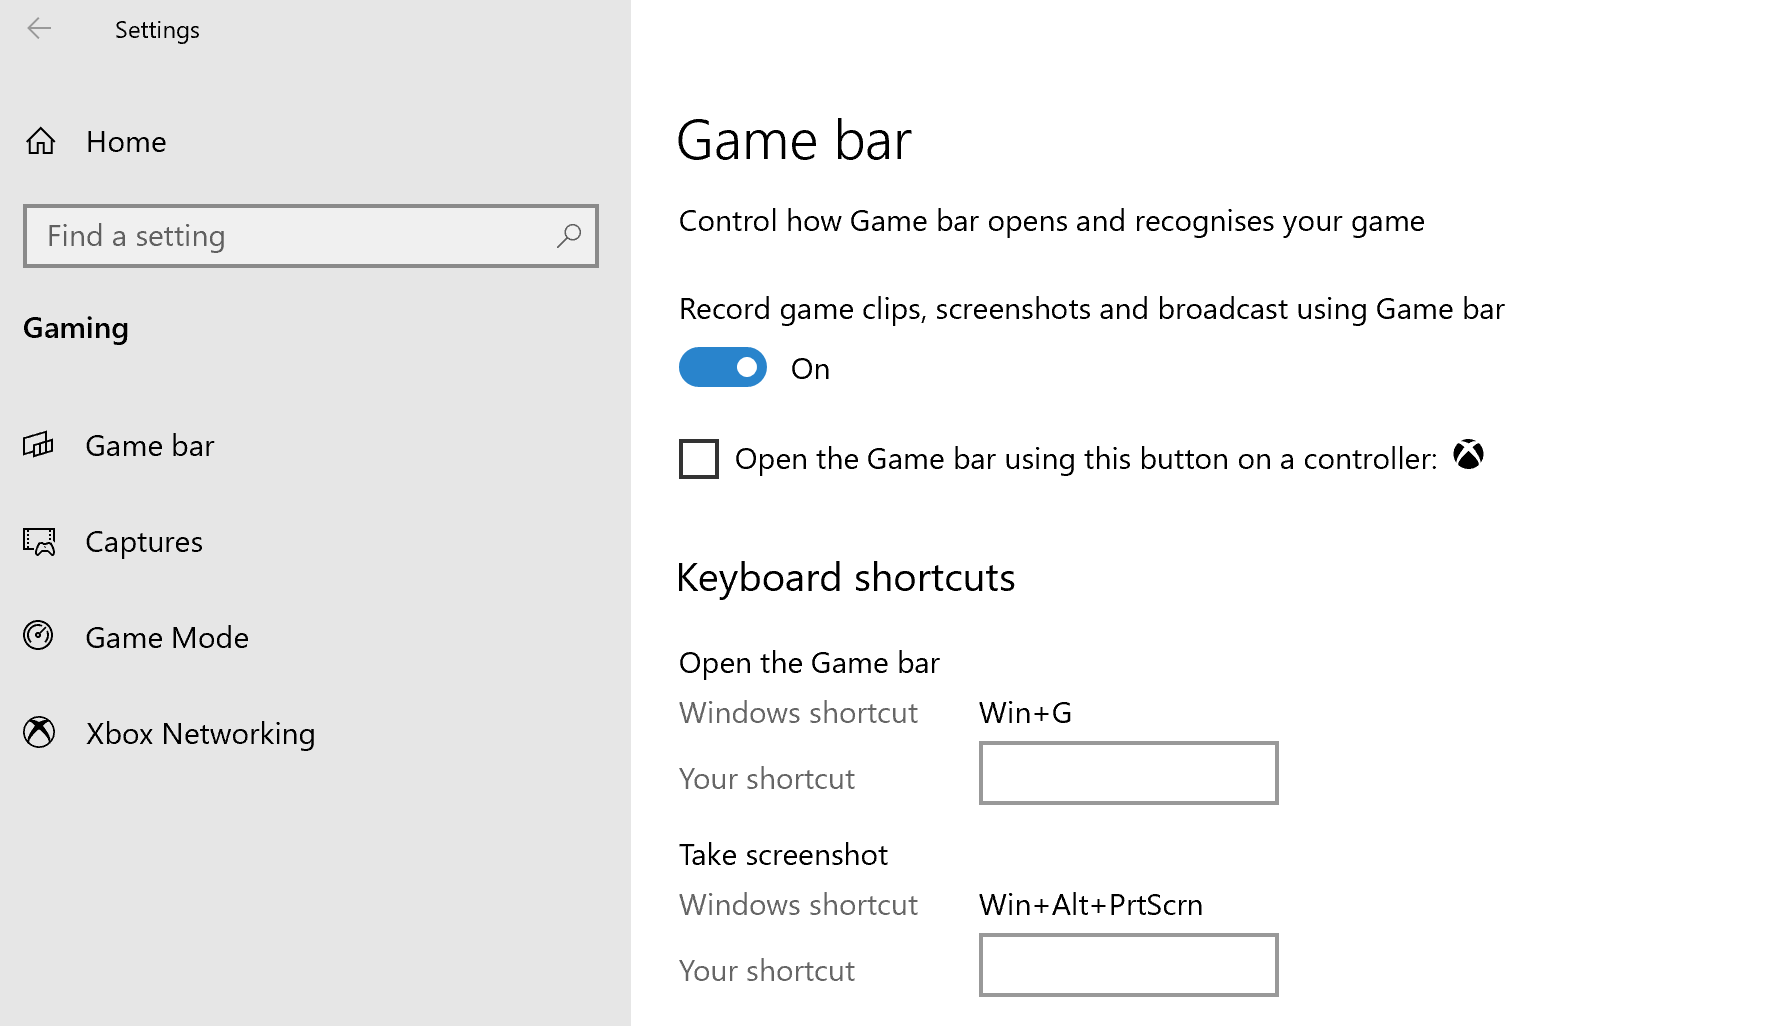 Ative a opção de transmissão na barra de jogo do Windows 10 para transmitir via Mixer